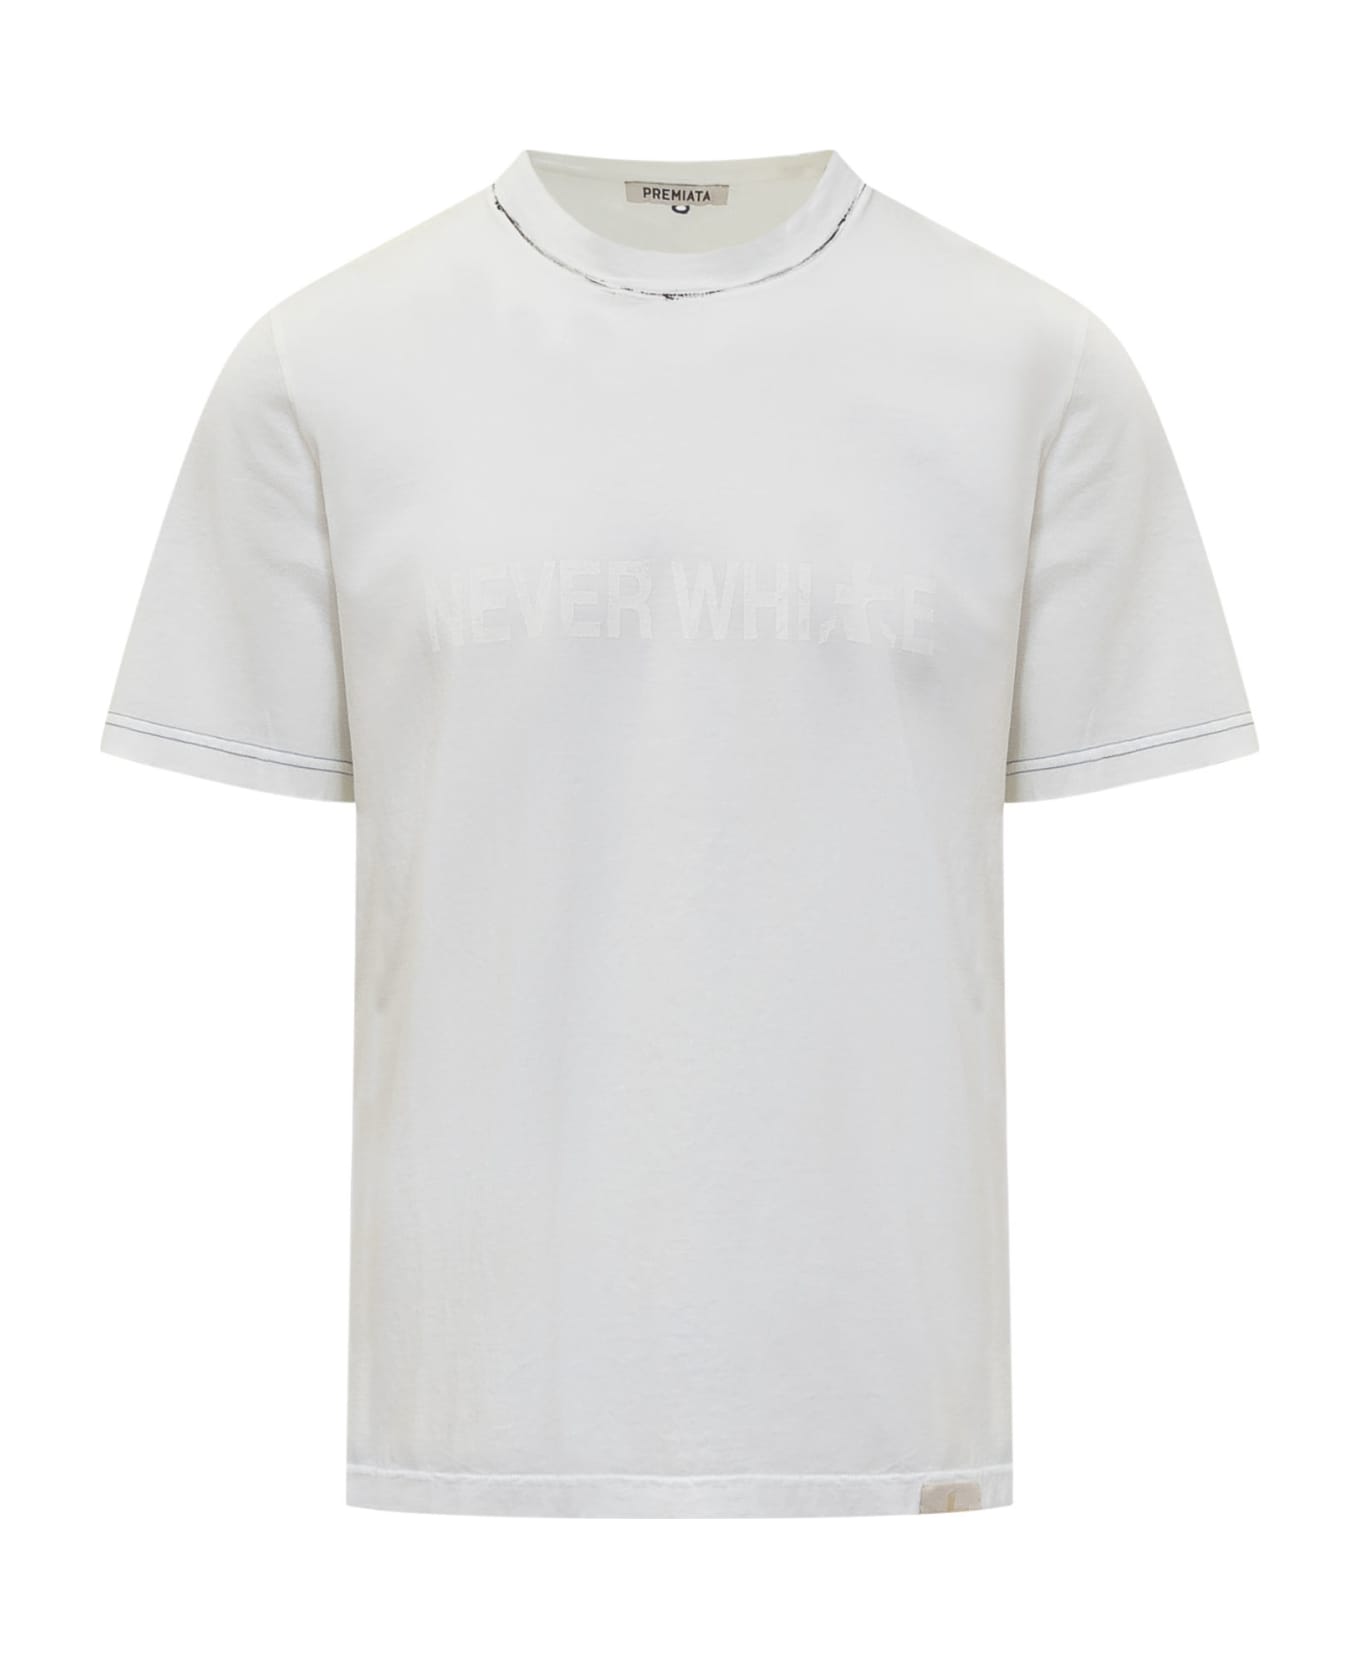 Premiata T-shirt With Print - WHITE